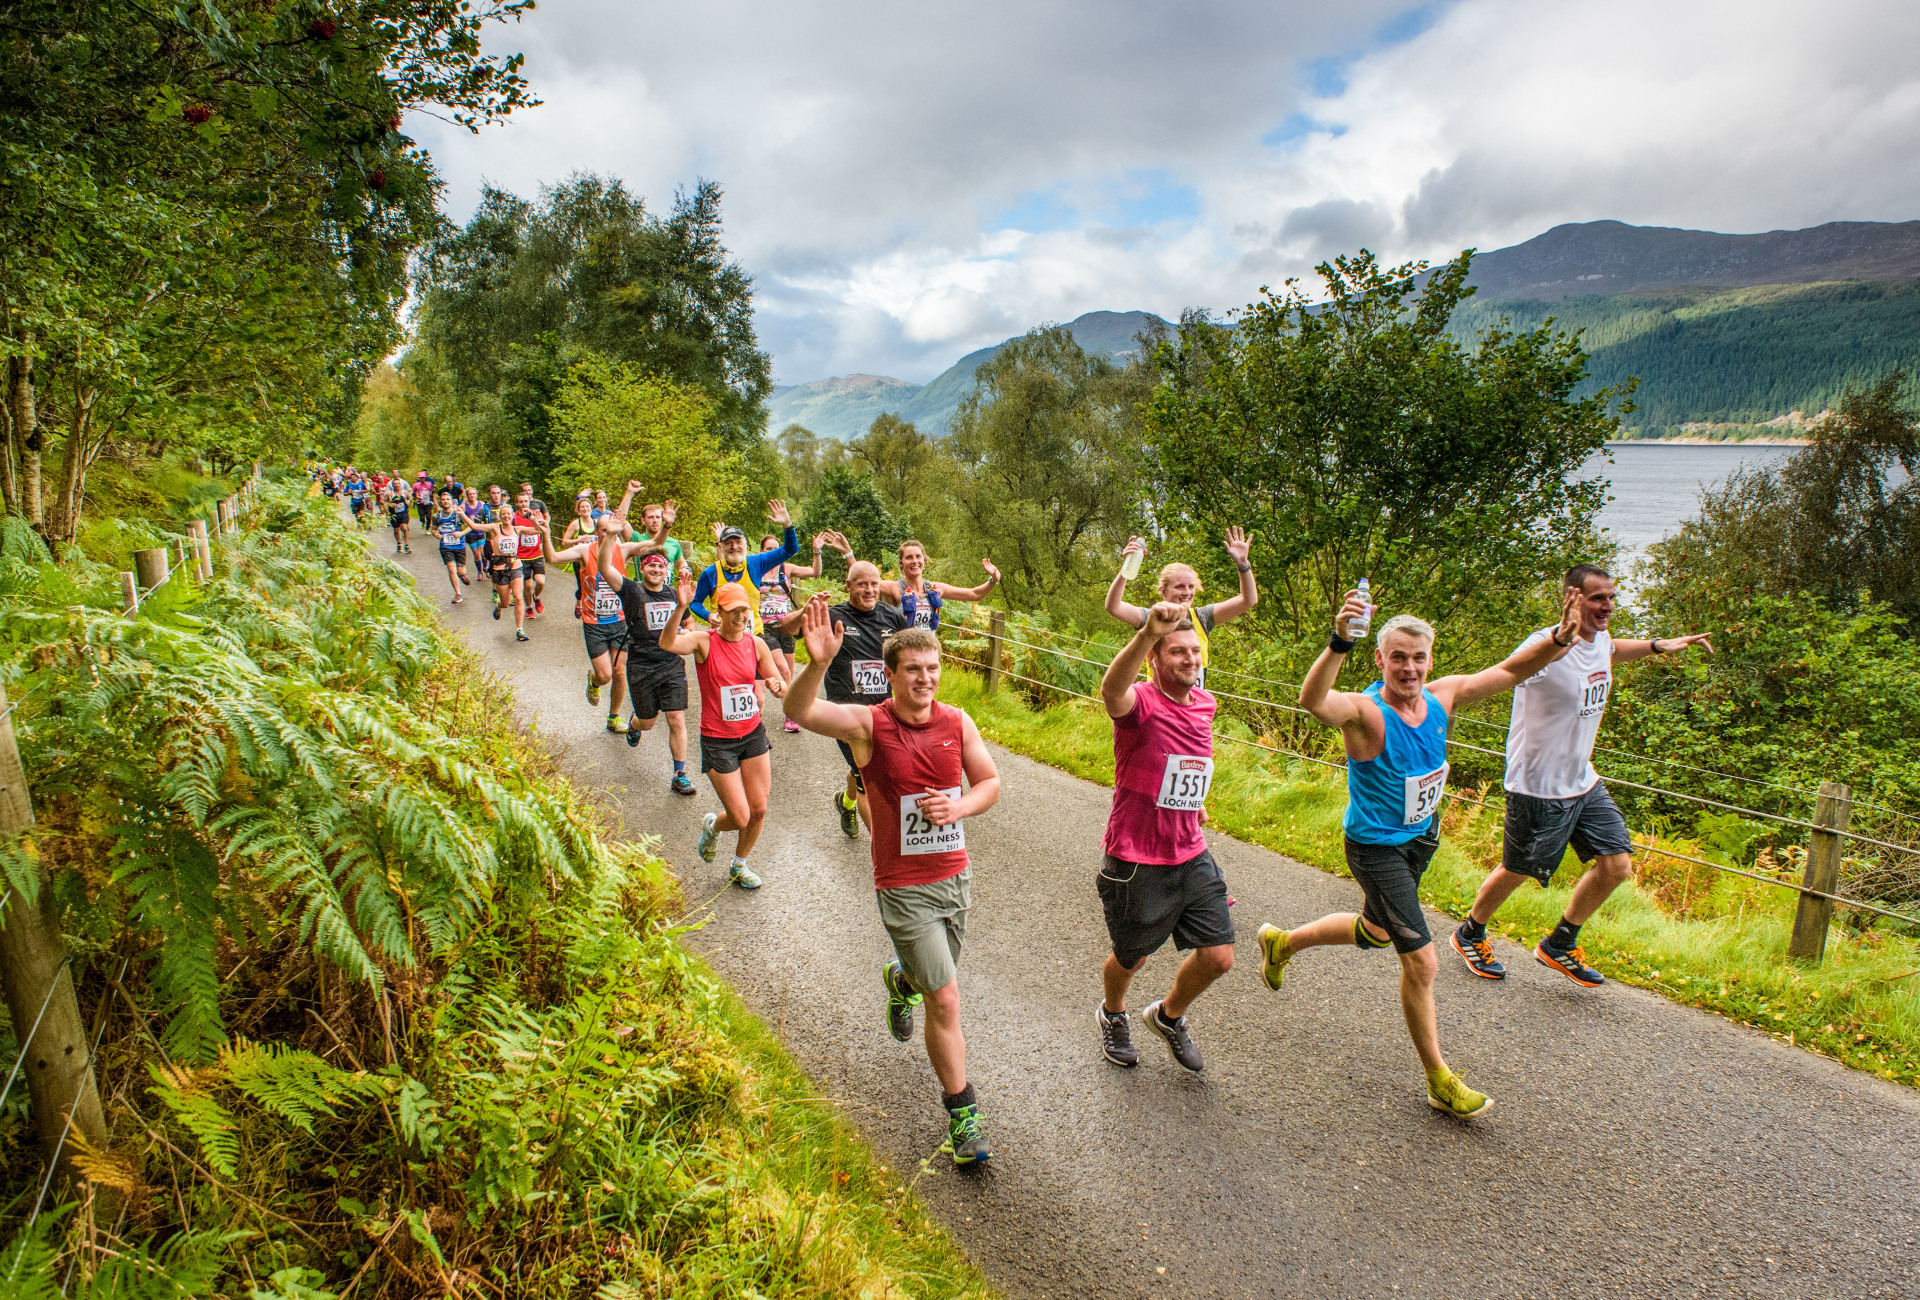 Loch Ness Marathon